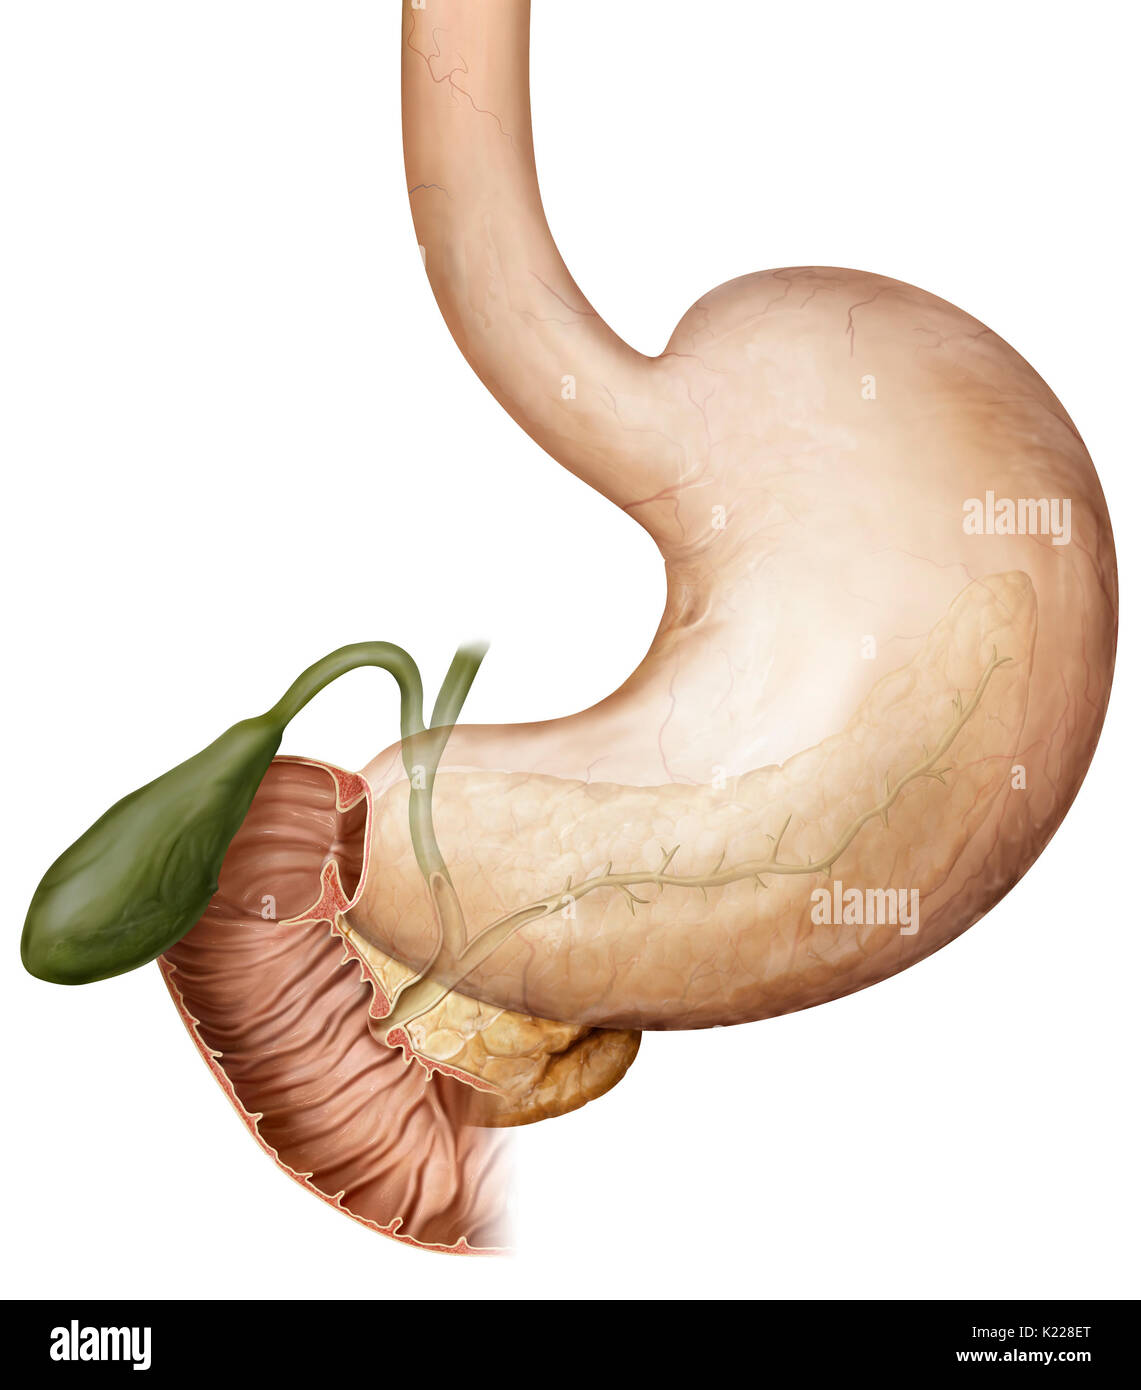 Sezione anteriore del piccolo intestino; le secrezioni dal fegato e pancreas, così come il cibo parzialmente digerito nello stomaco vuoto in essa. Foto Stock